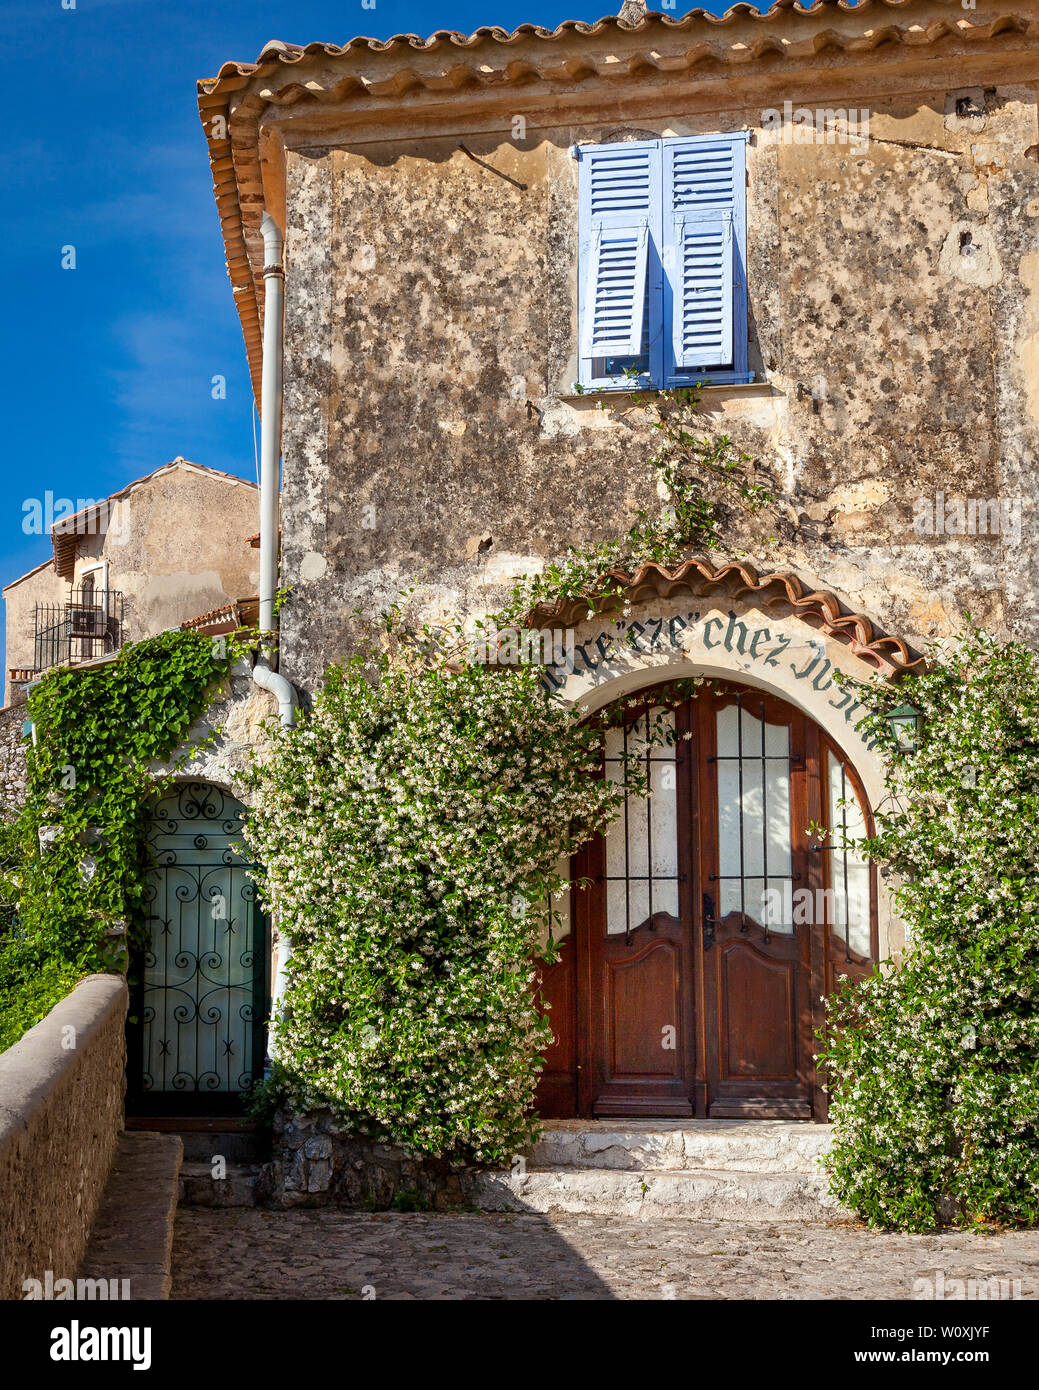 Jasmine pans porte voûtée dans village médiéval d'Eze, Provence, France Banque D'Images